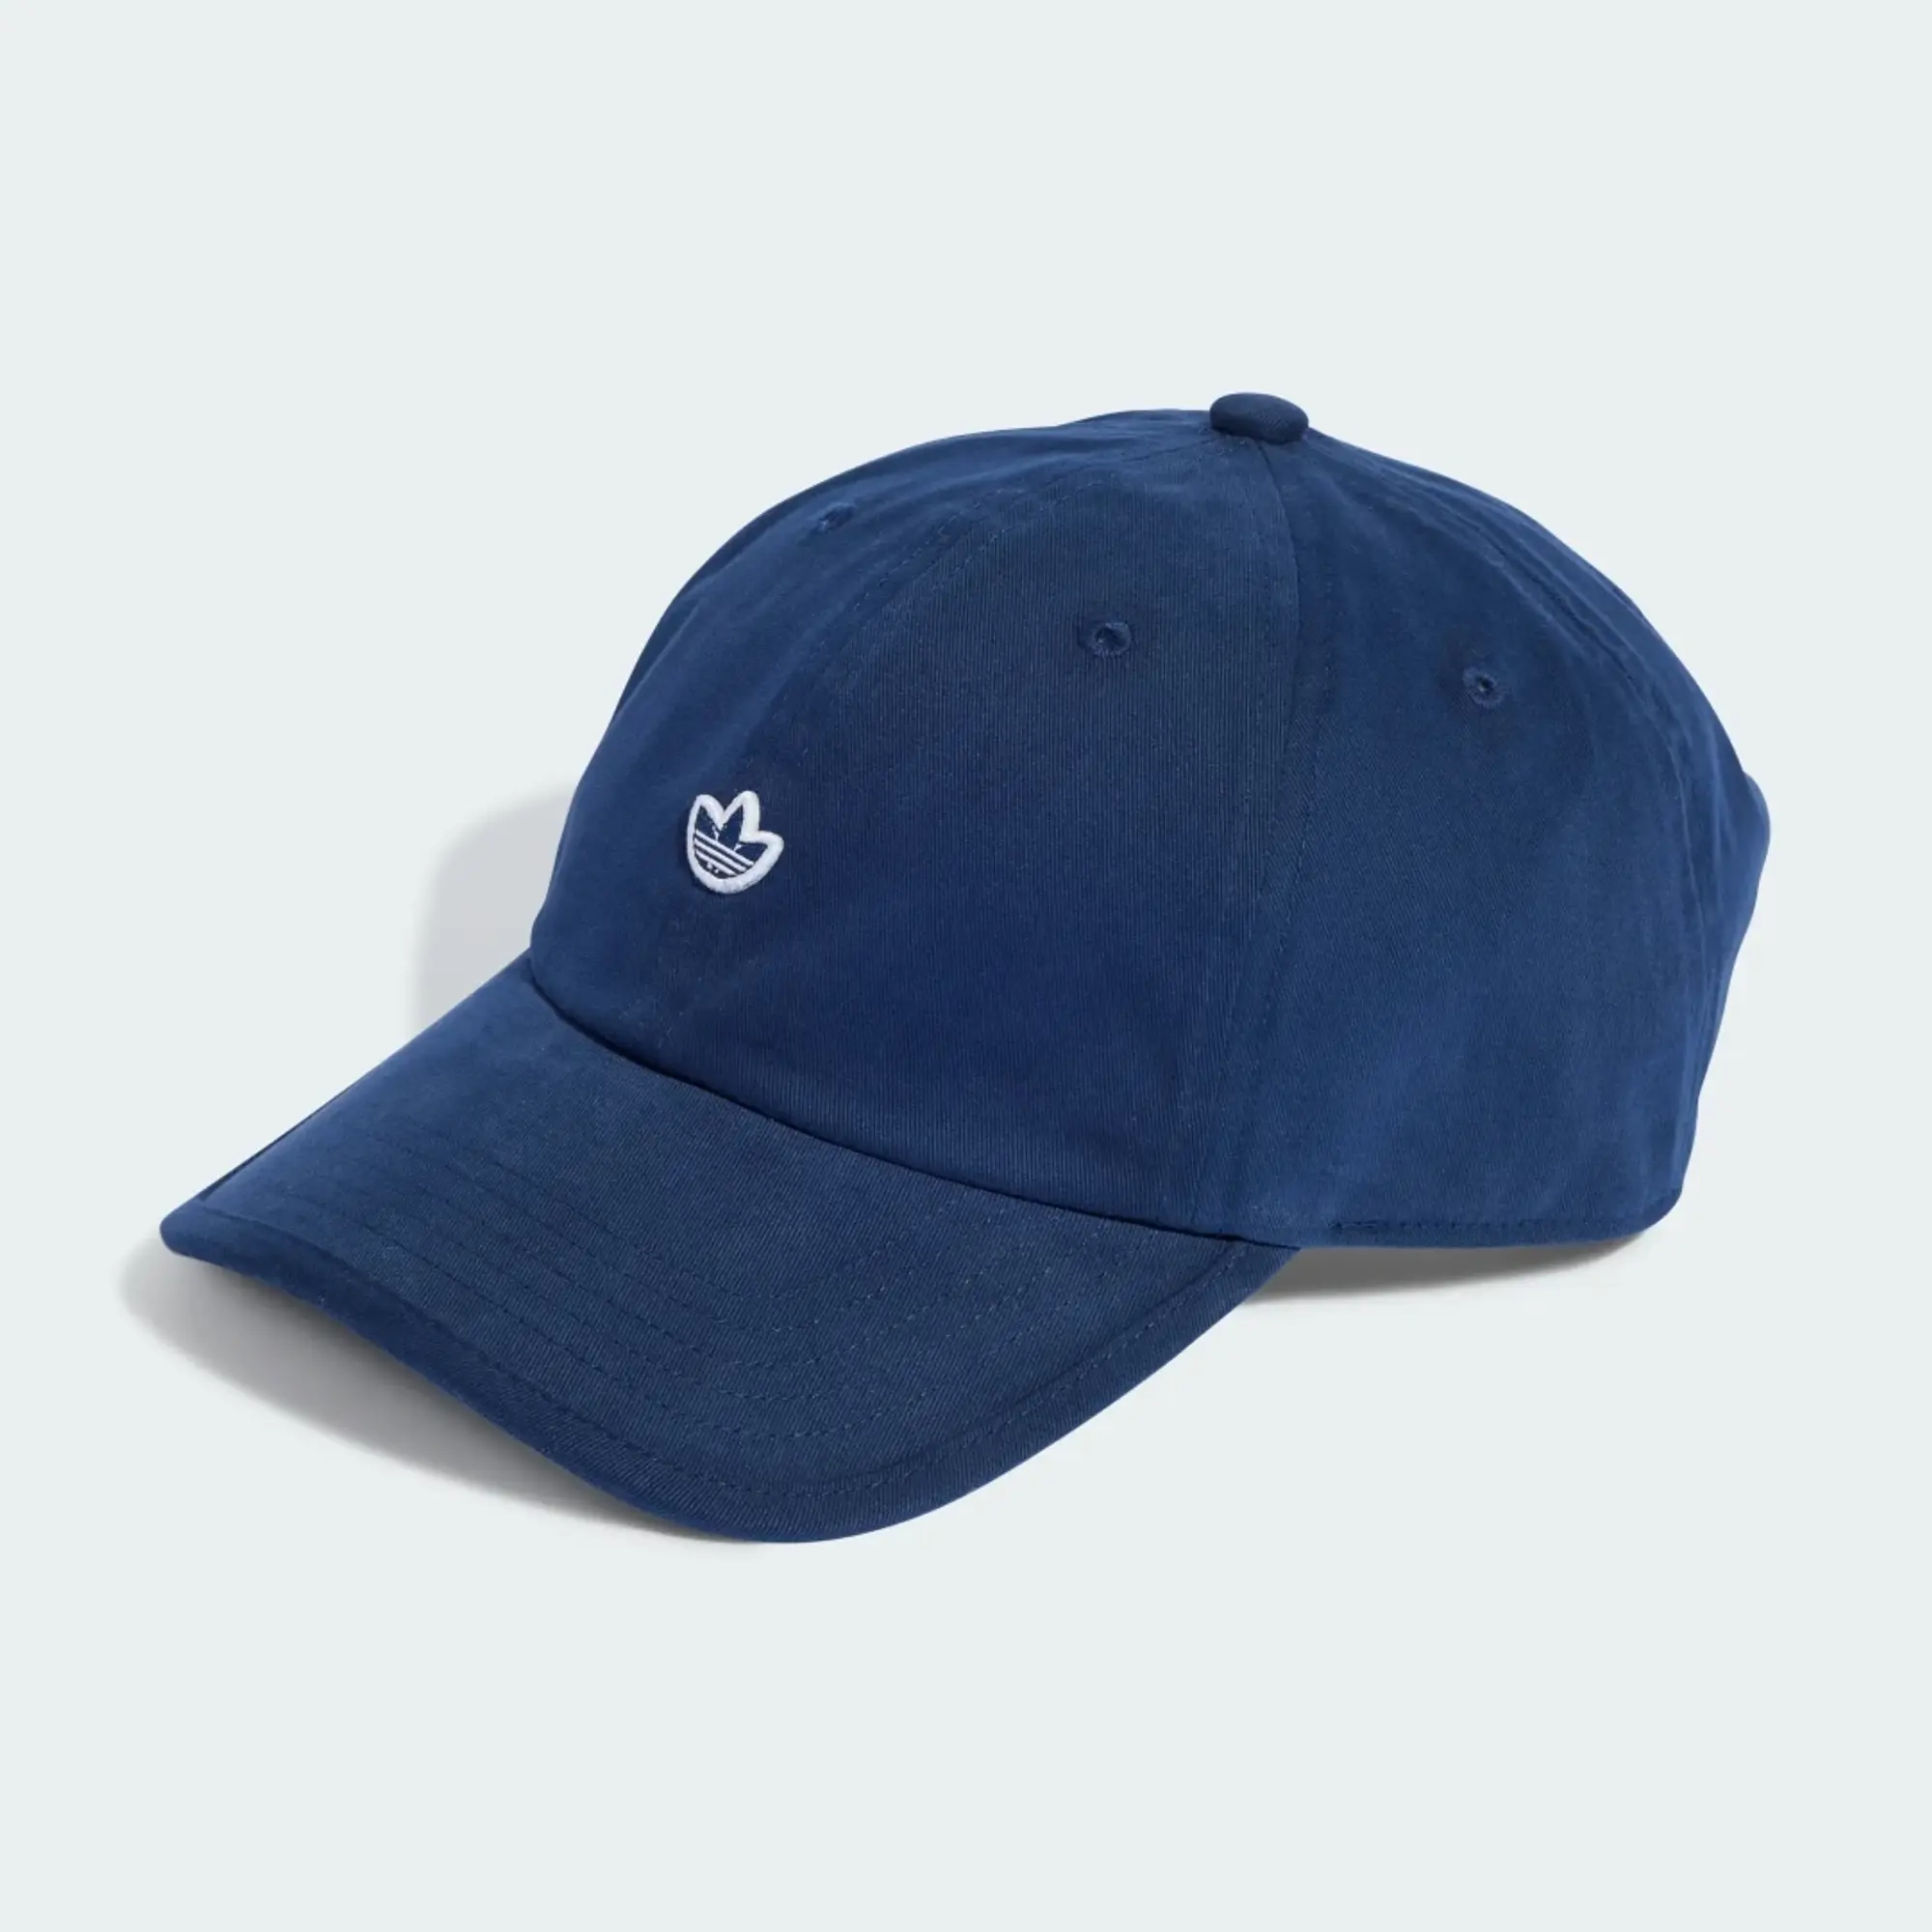 Adidas Originals Adicolor Hat In Dark Blue